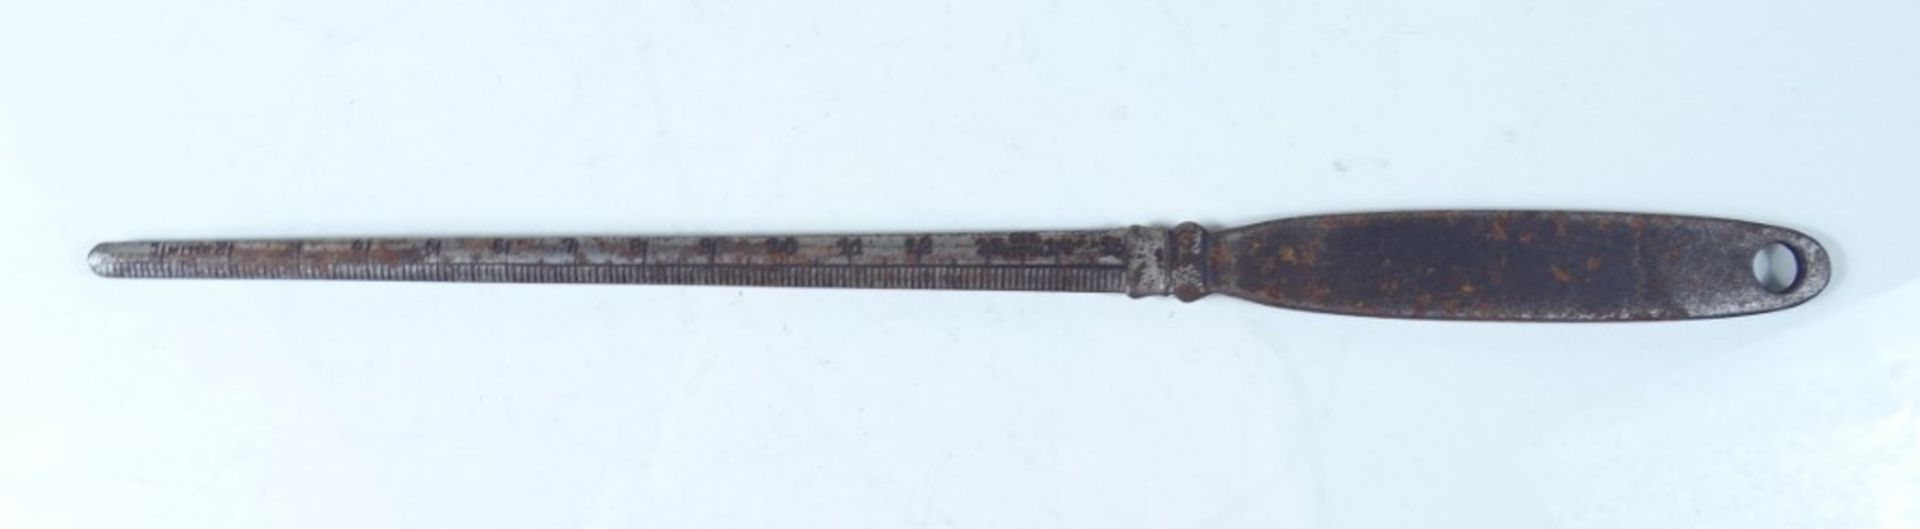 Brieföffner mit Maßstab, Metall, gepunzt "Rheinland", L. 25,5 cm